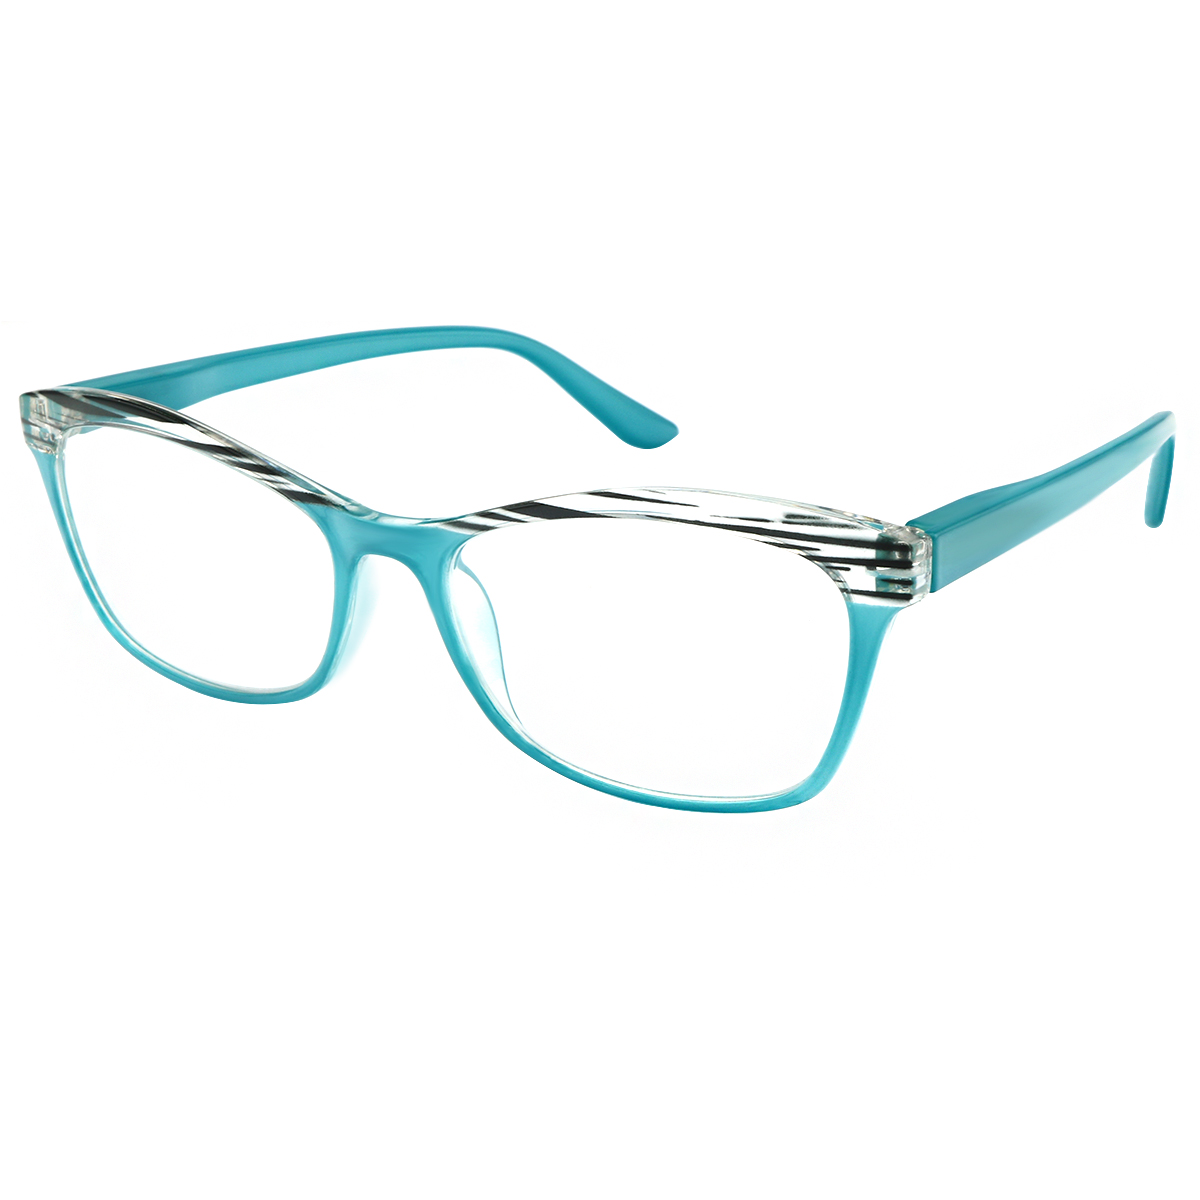 Orion - Cat-eye Blue Reading Glasses for Men & Women